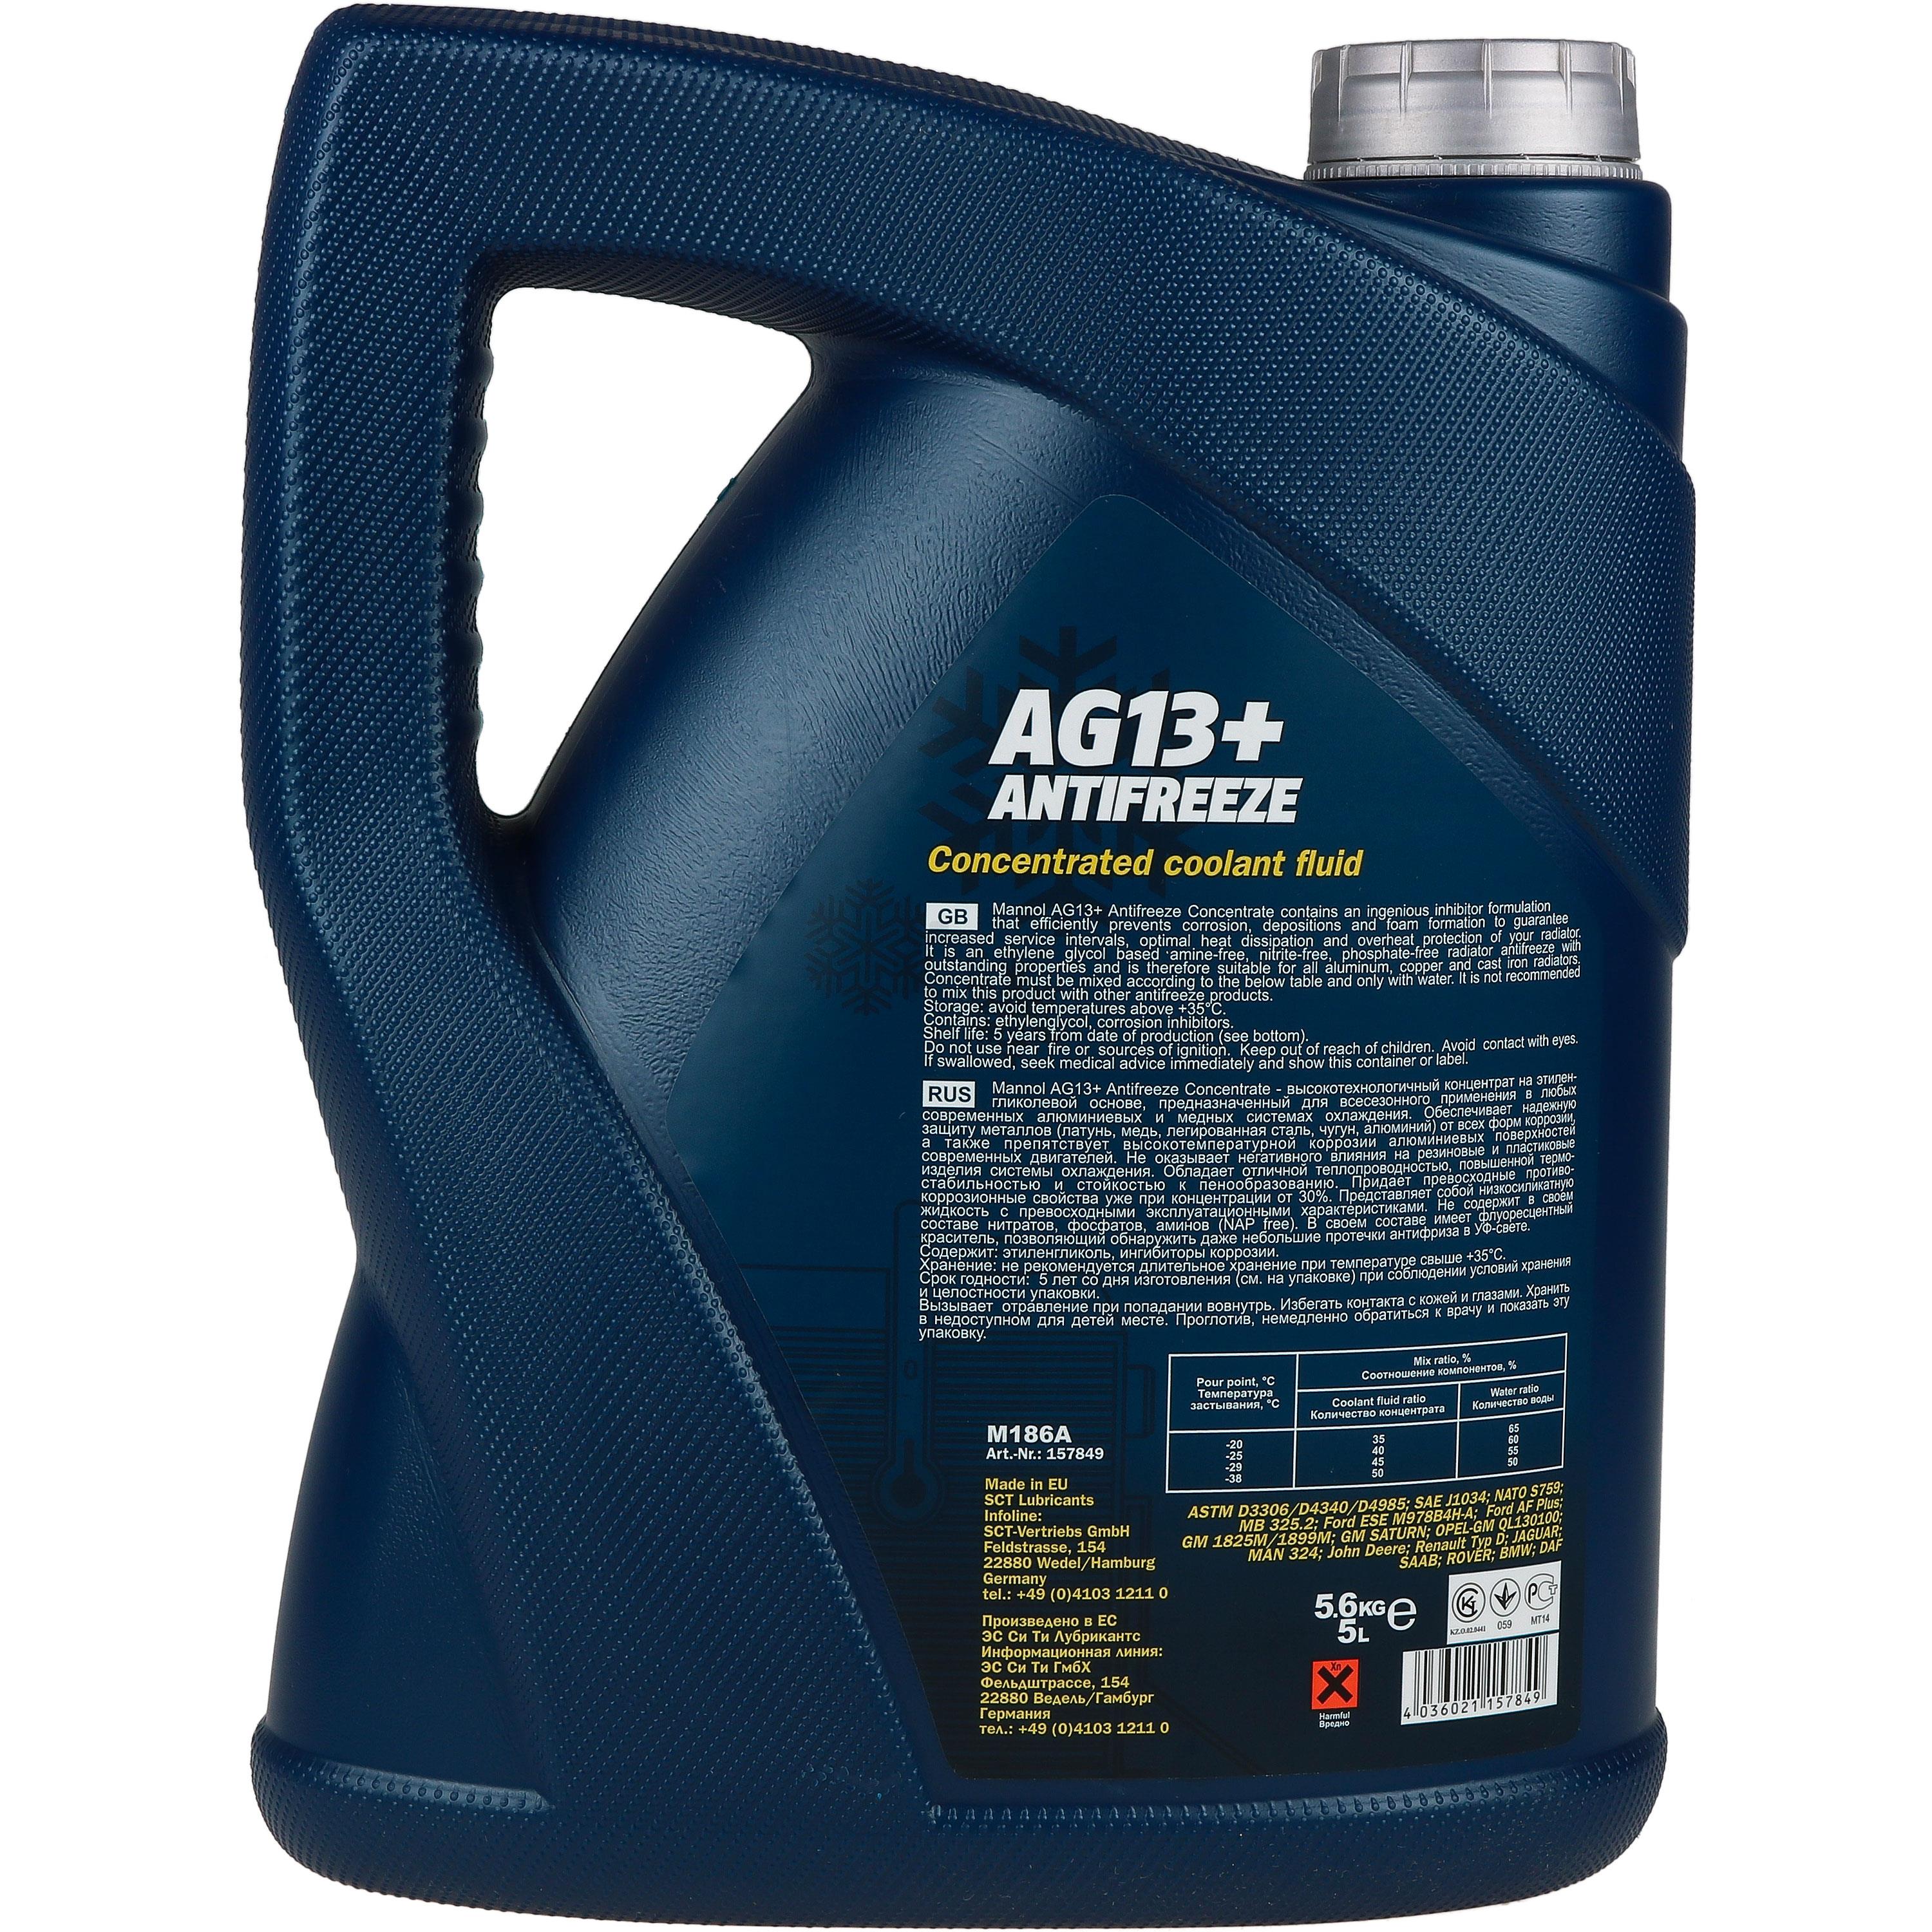 5 Liter MANNOL Kühlerfrostschutz Antifreeze AG13+ Advanced gelb Konzentrat G13+